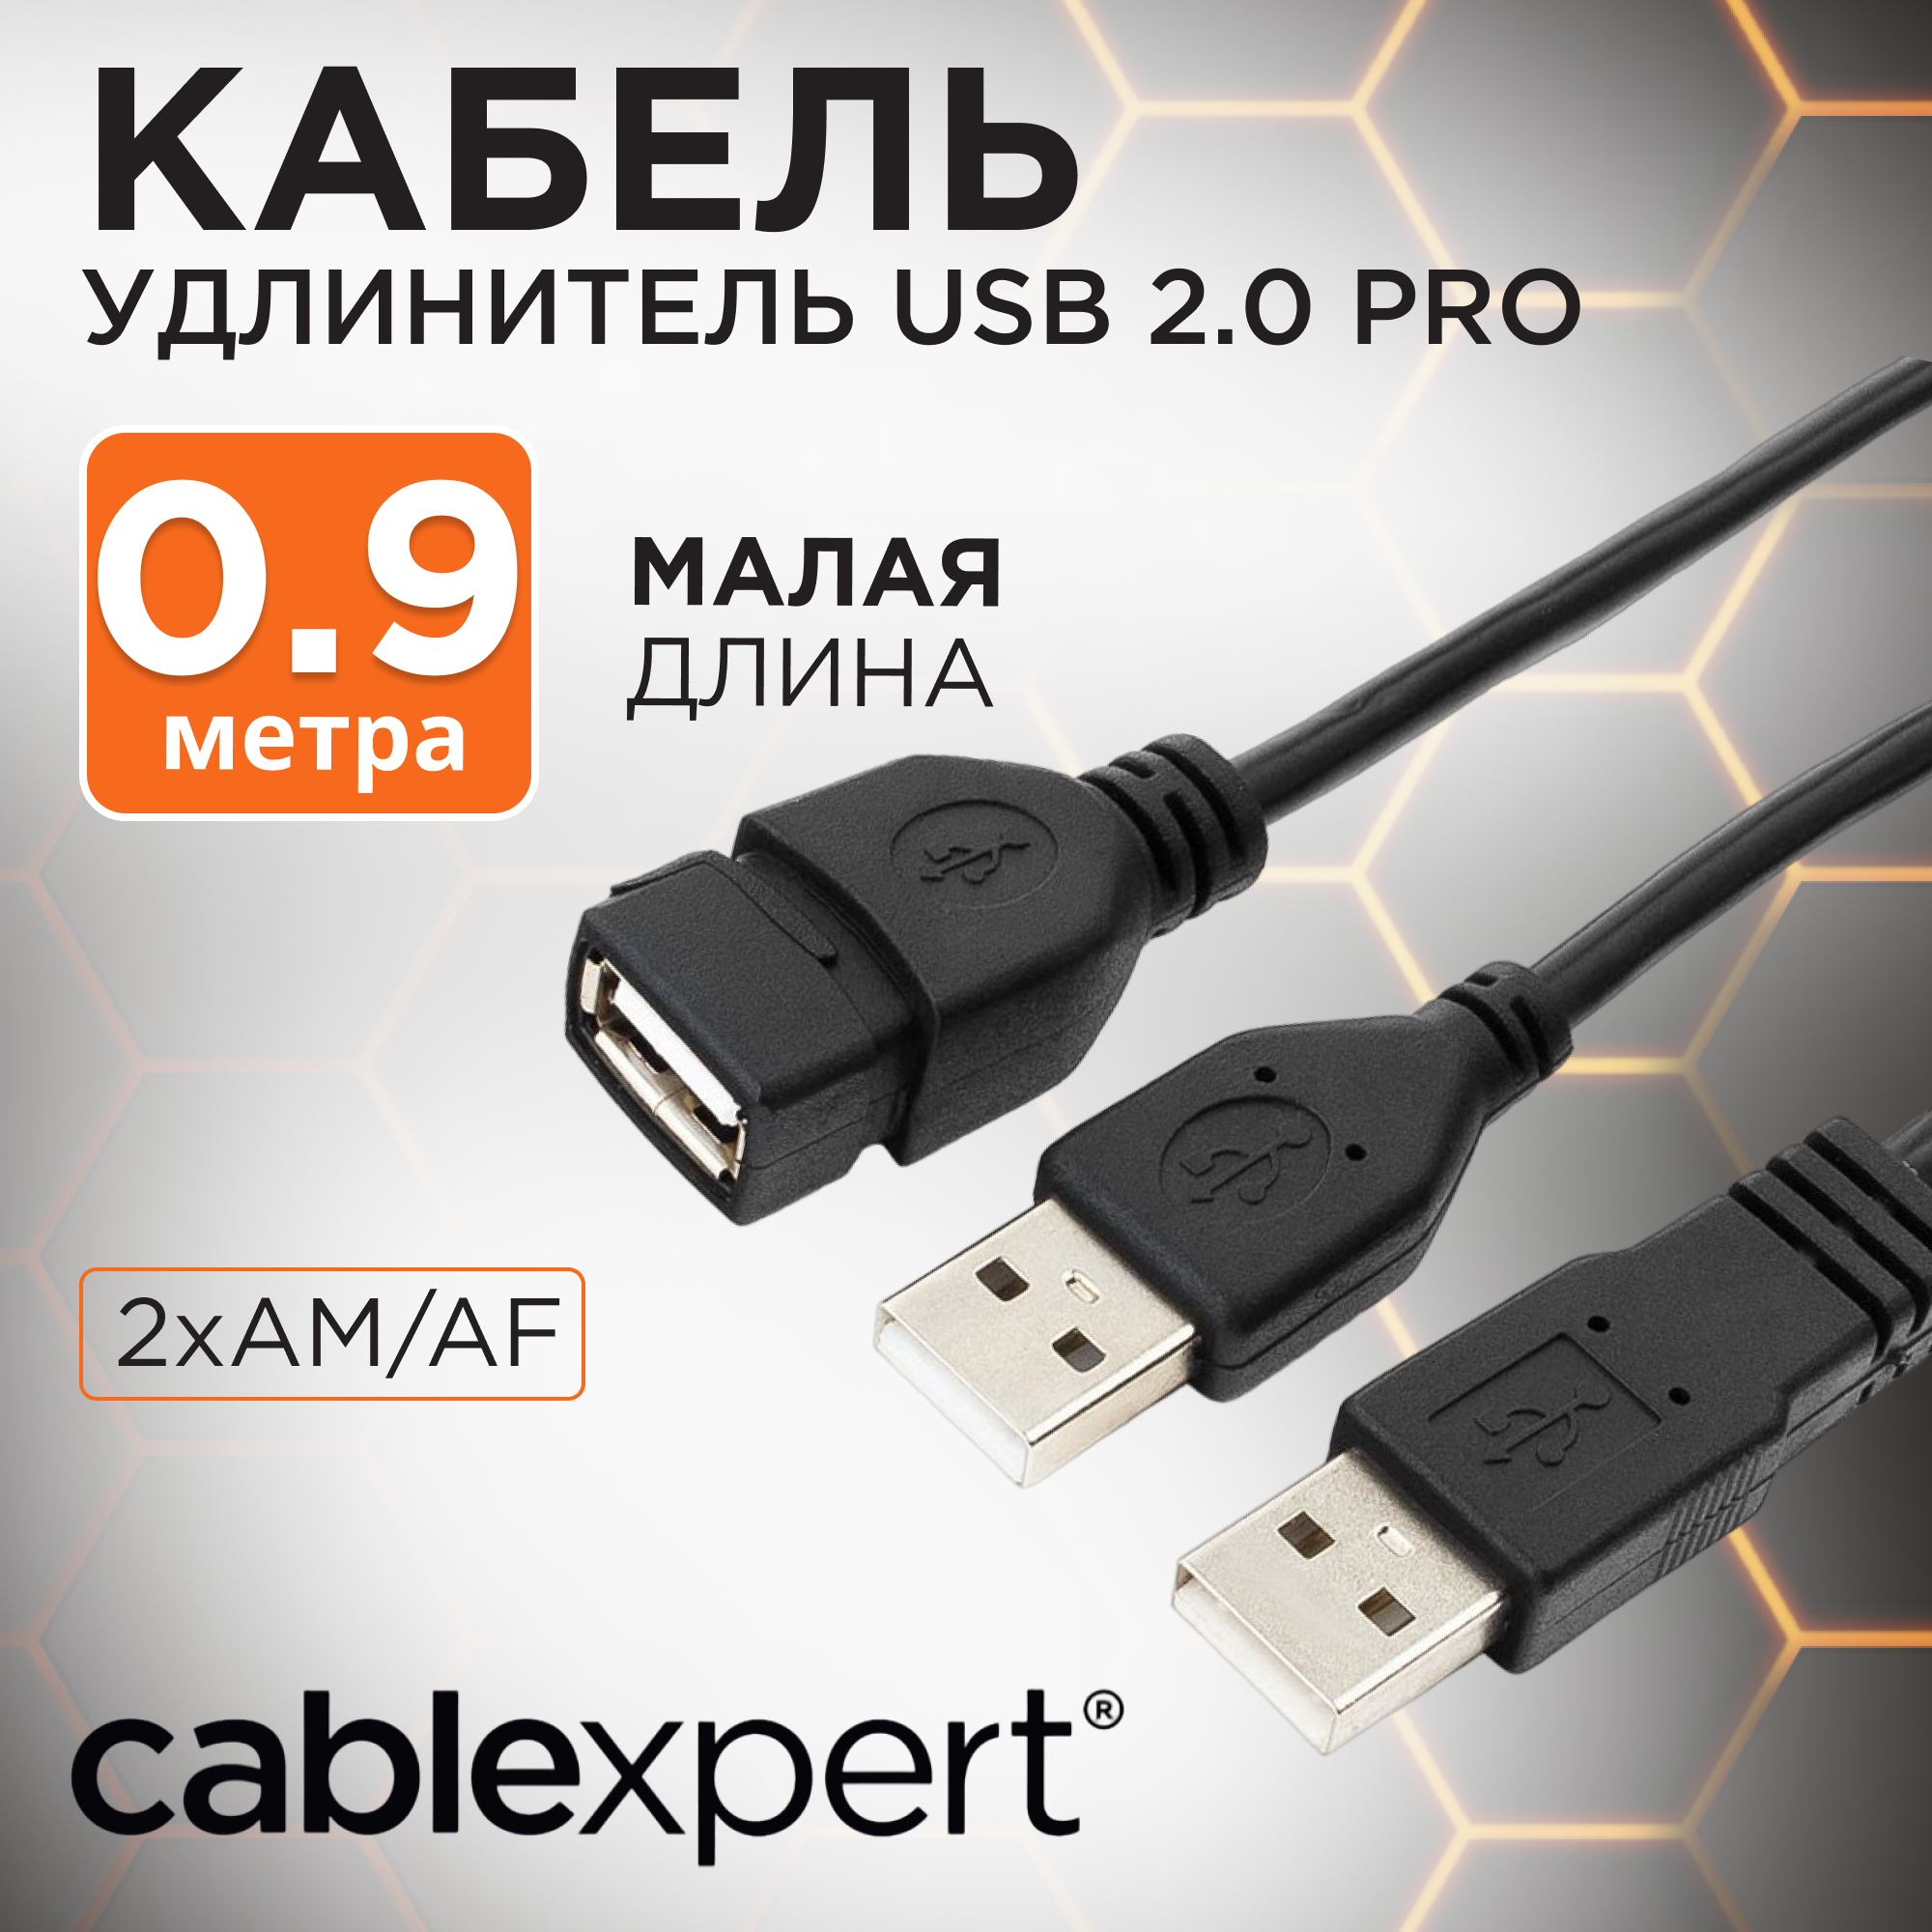 Кабель удлинитель USB 2.0 Pro, 2xAM/AF, экран, 0,9 м, черный, Cablexpert CCP-USB22-AMAF-3